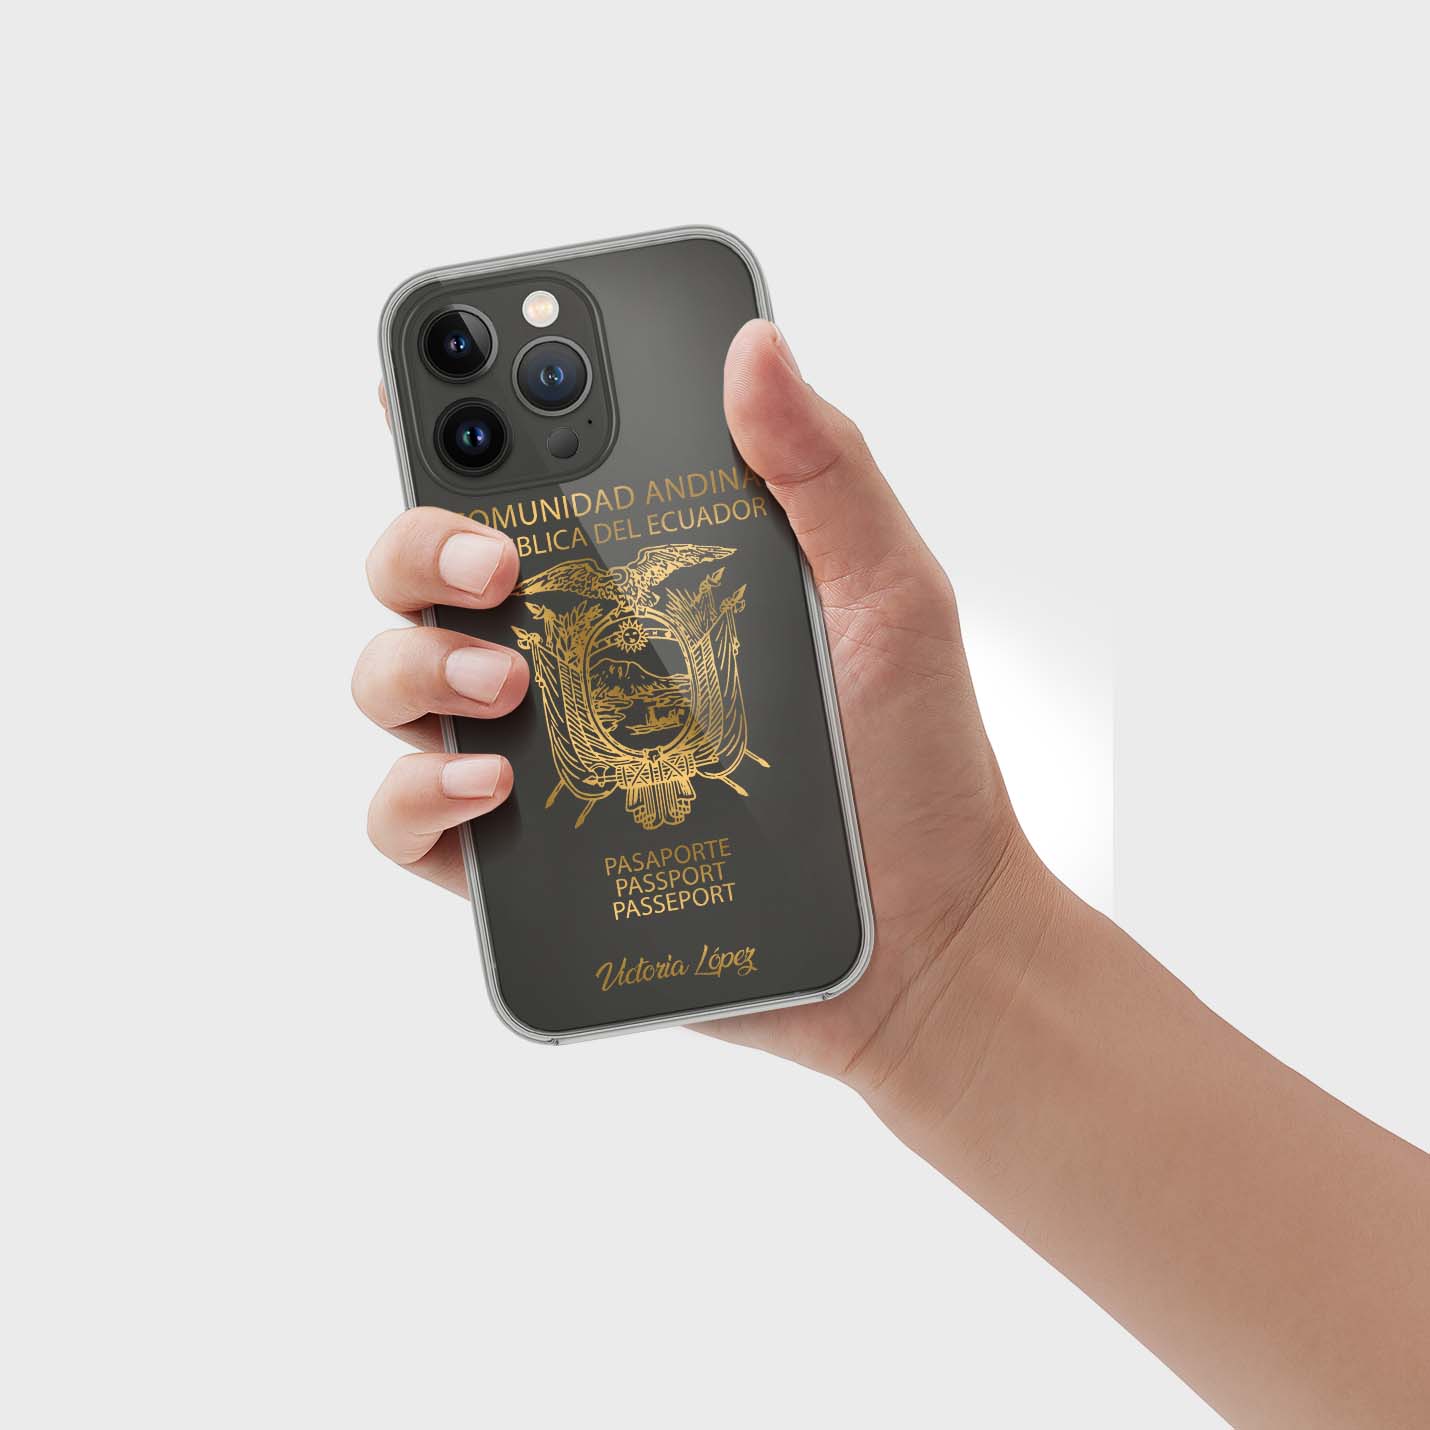 Handyhüllen mit Reisepass - Ecuador - 1instaphone